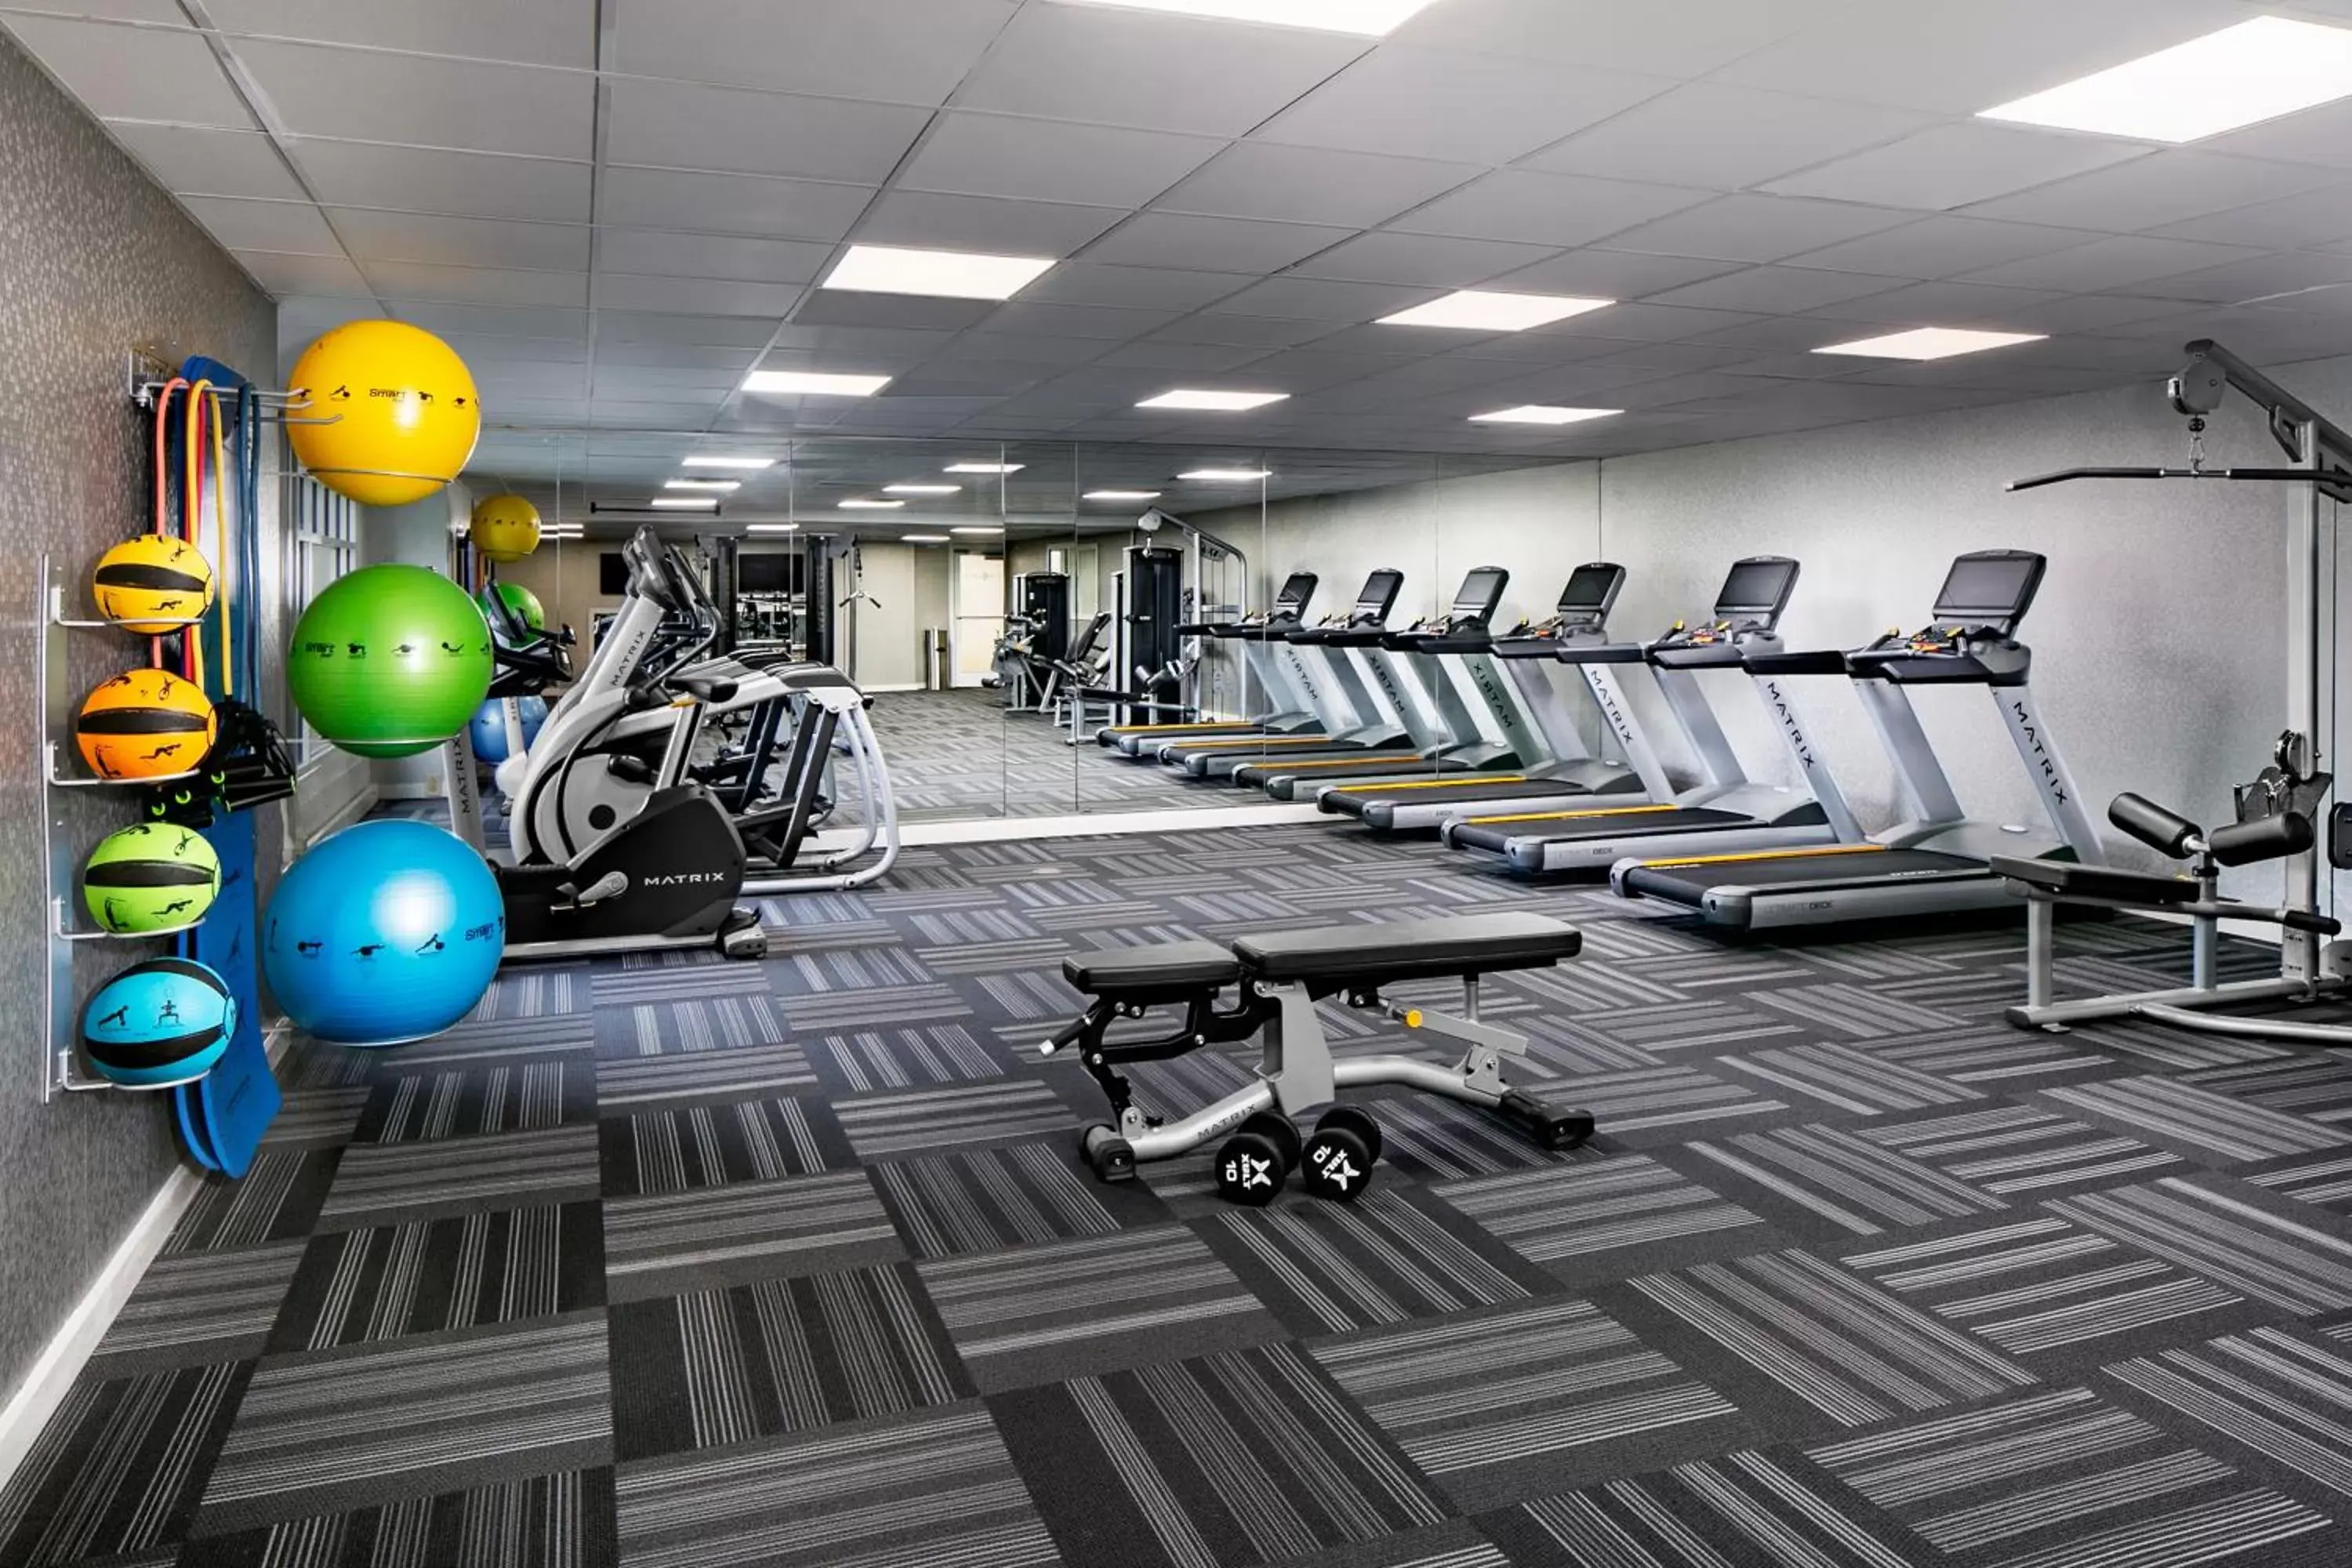 Fitness centre/facilities, Fitness Center/Facilities in Hyatt Regency Wichita